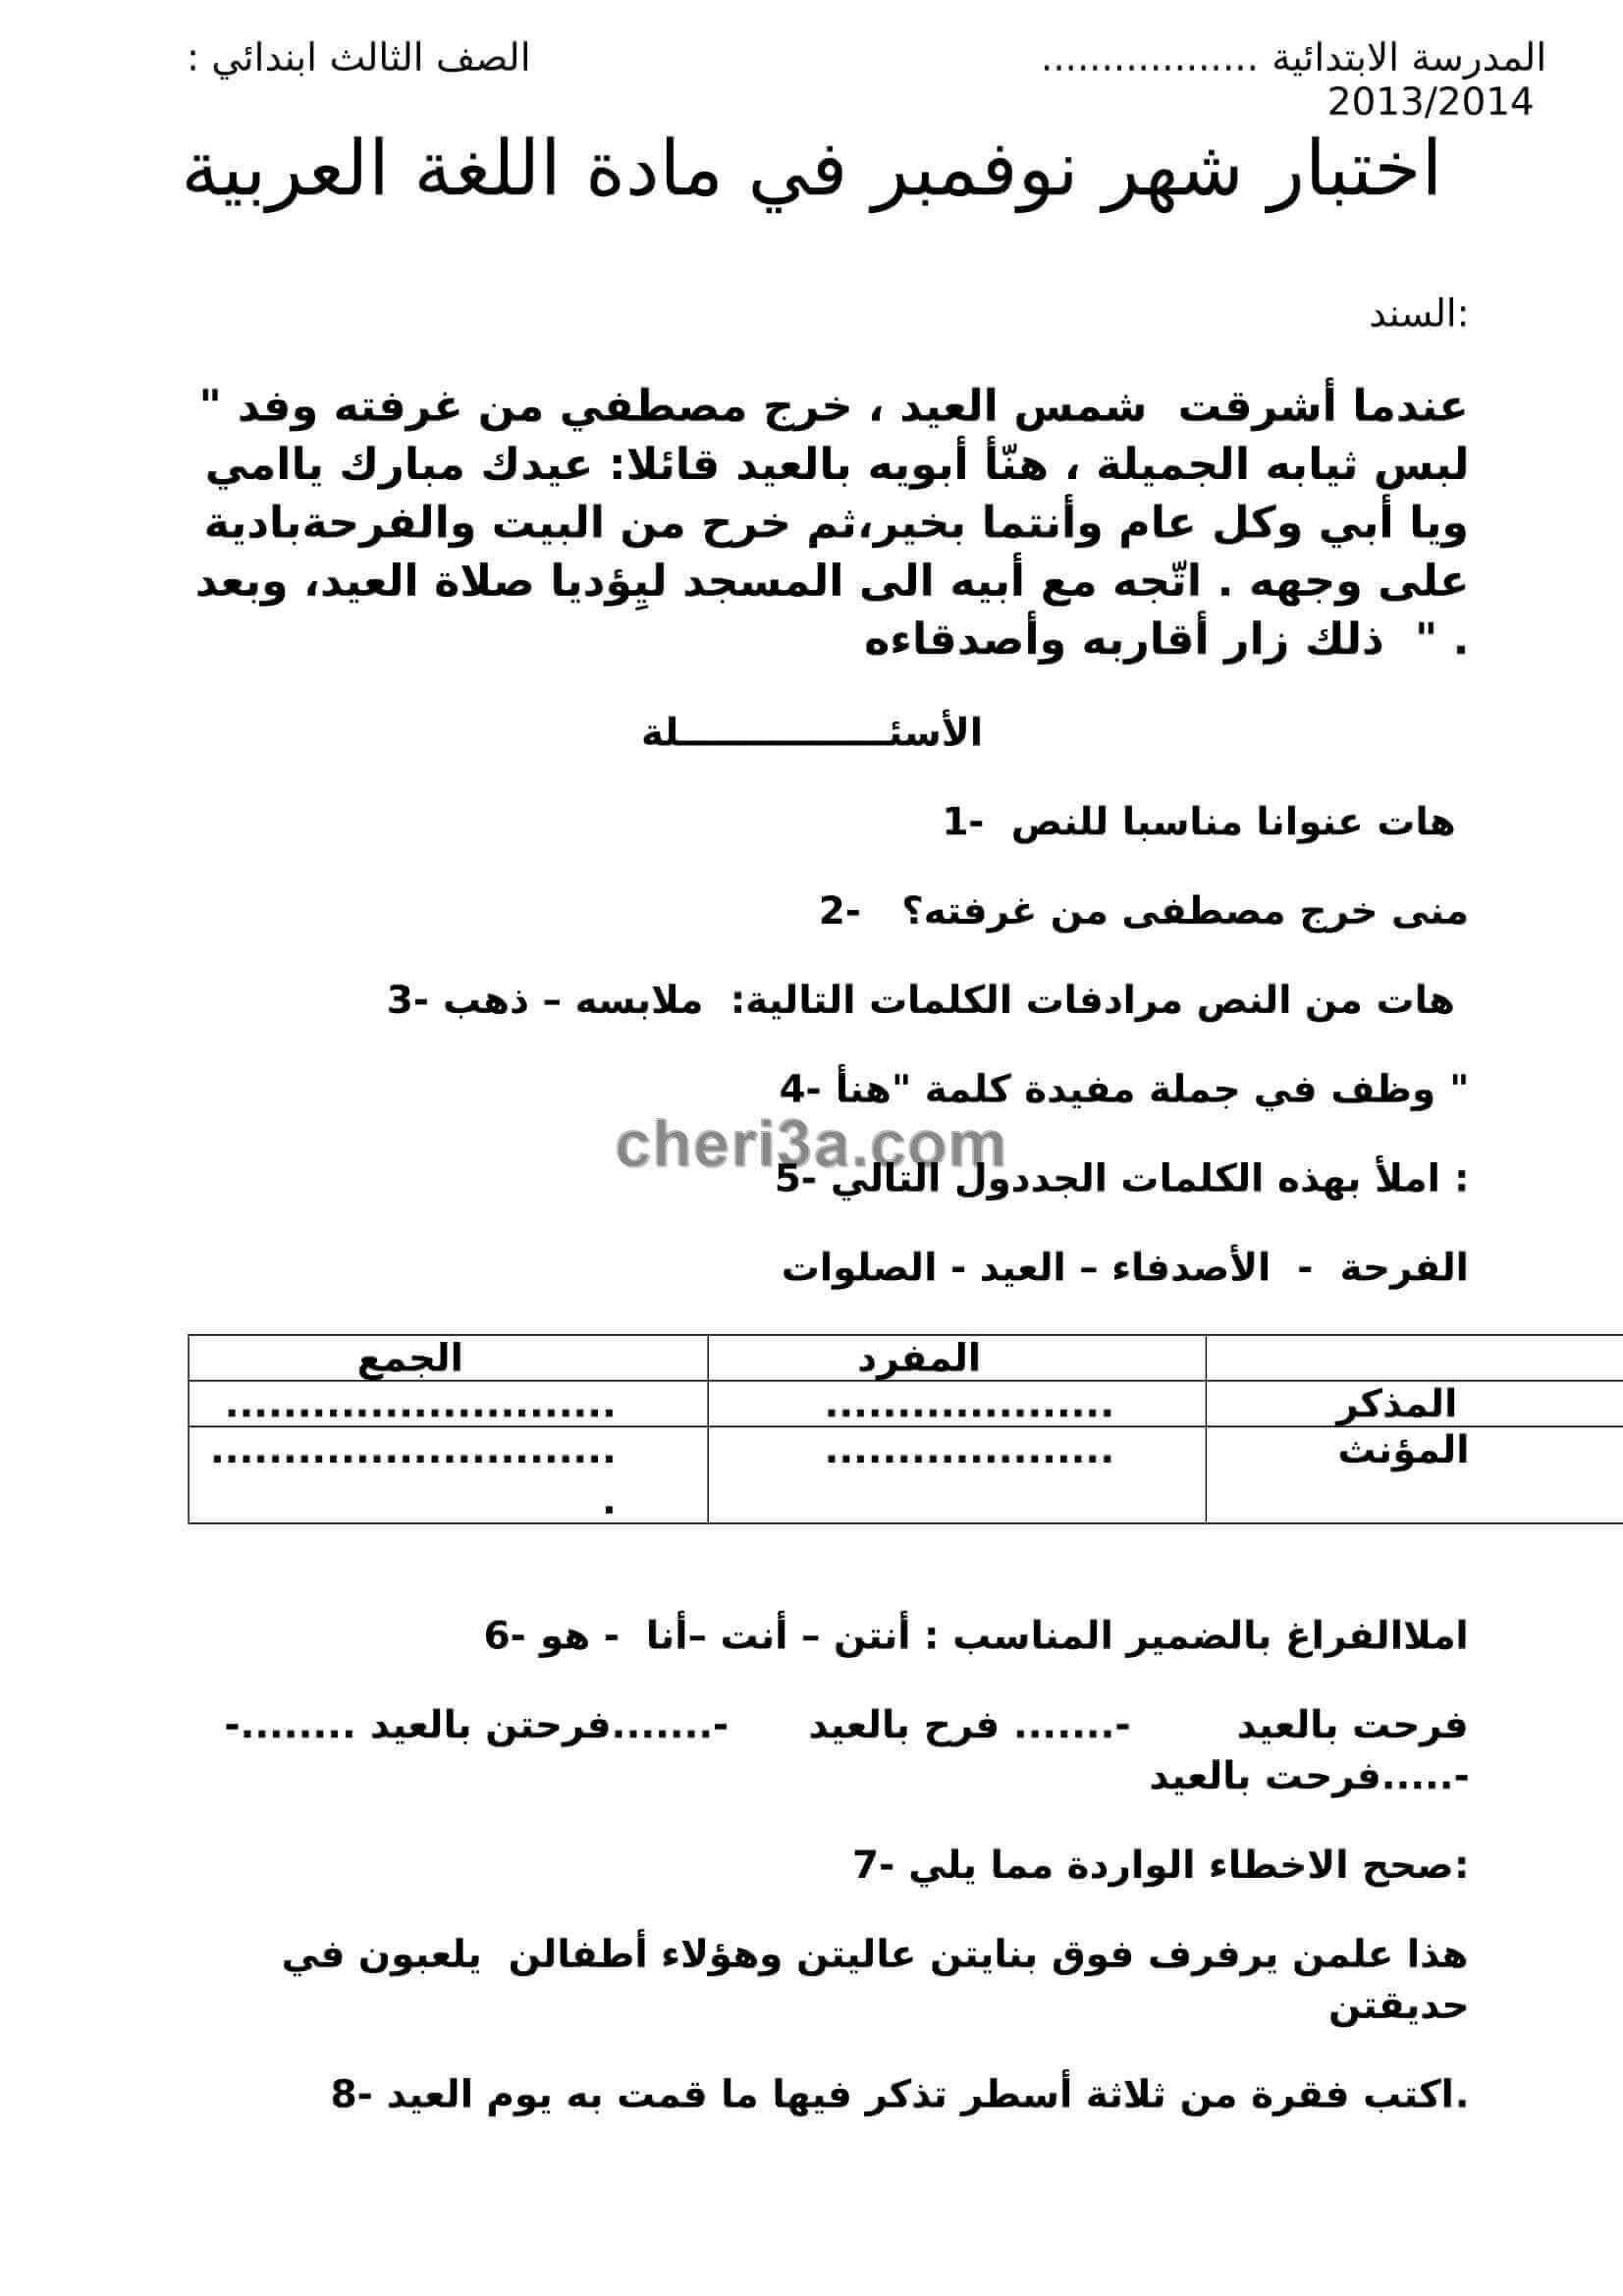 اختبار الفصل الاول للسنة الثالثة ابتدائي في مادة اللغة العربية النموذج 7